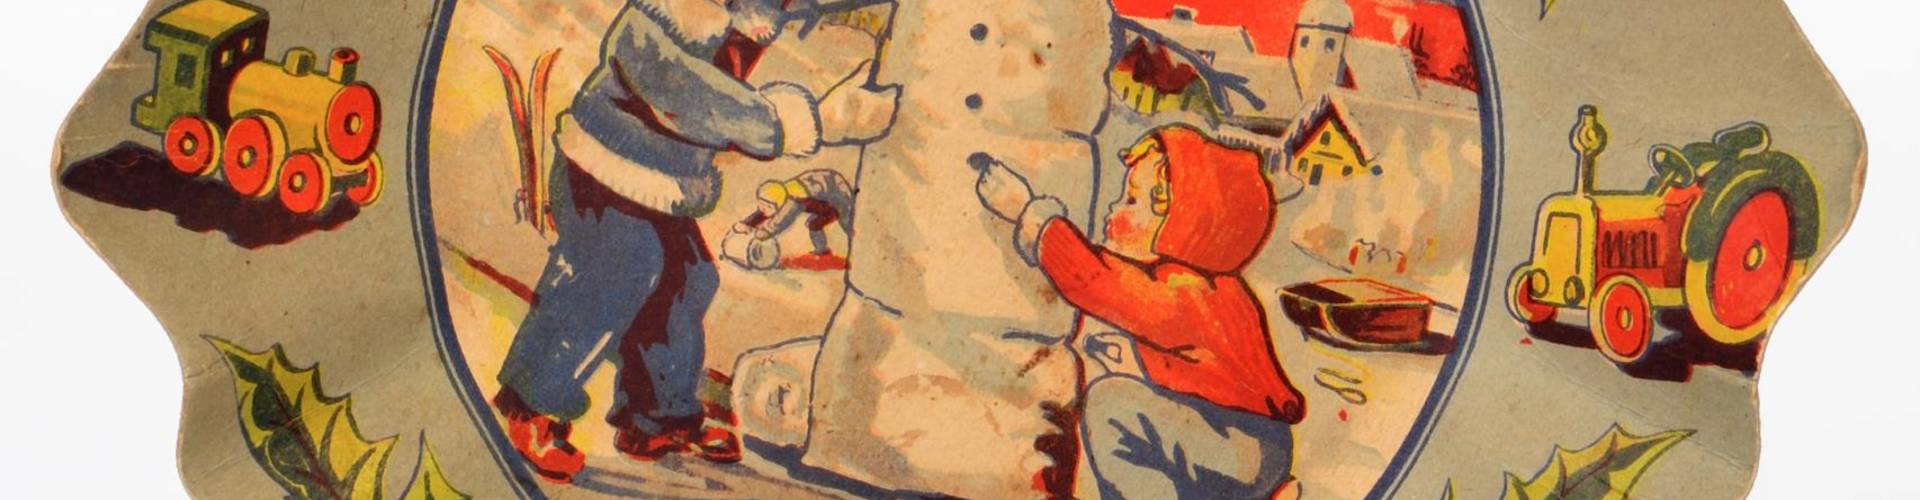 alter Pappteller, darauf ist ein Schneemann gezeichnet, der etwas grimmig schaut, Kinder in Winterkleidung stehen um ihn herum